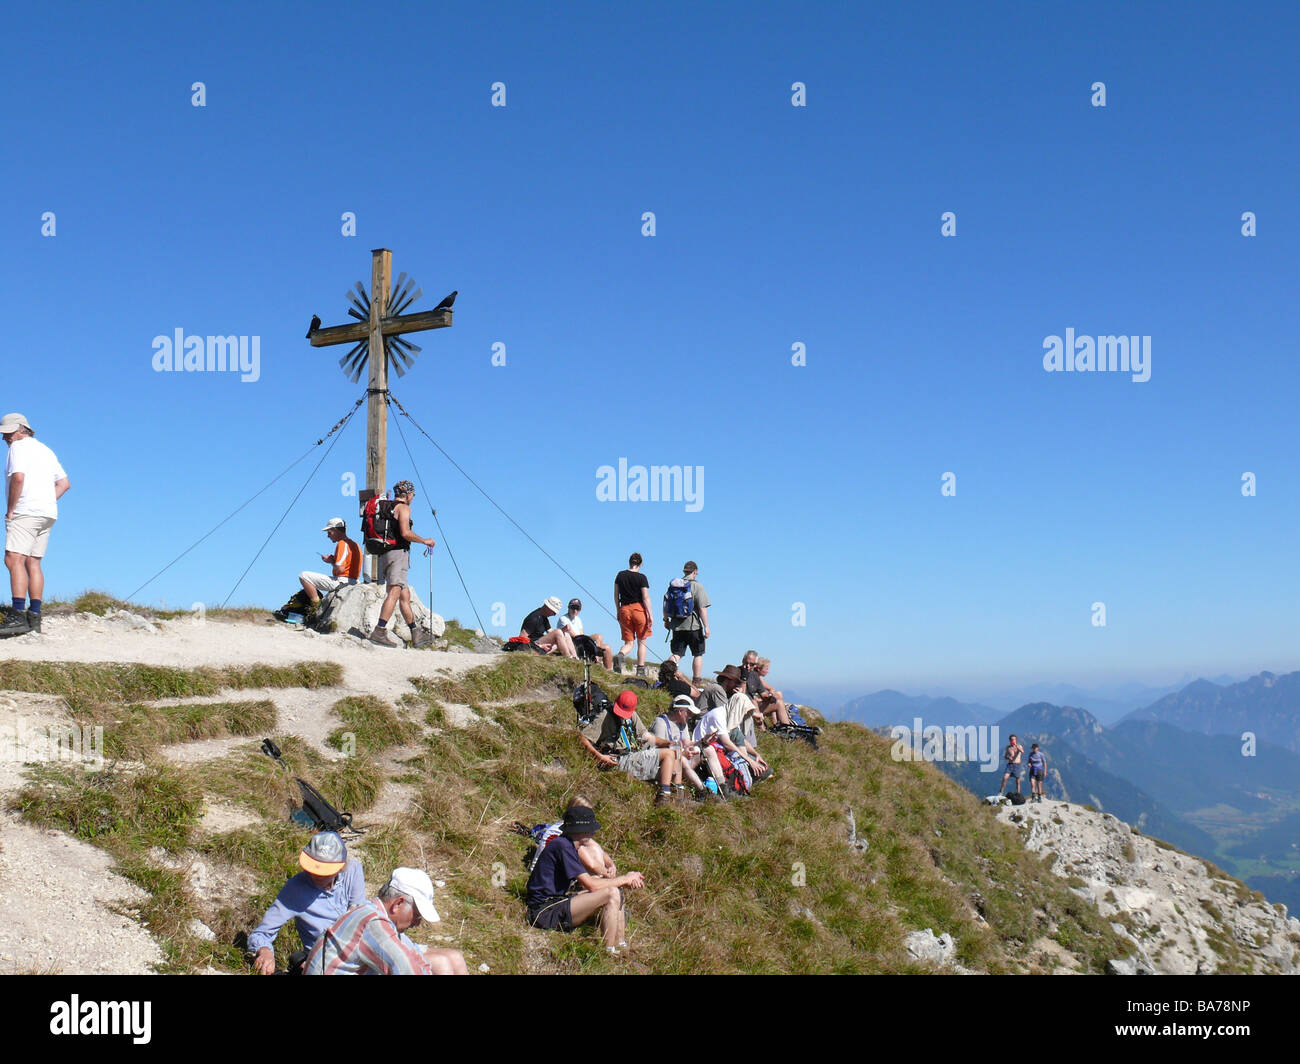 Alemania Ammergauer Alpes gran barranco-top 1924m de cumbre de montaña de la cruz excursionistas no liberación de moda Alpes bunting-montañas cerca de Foto de stock